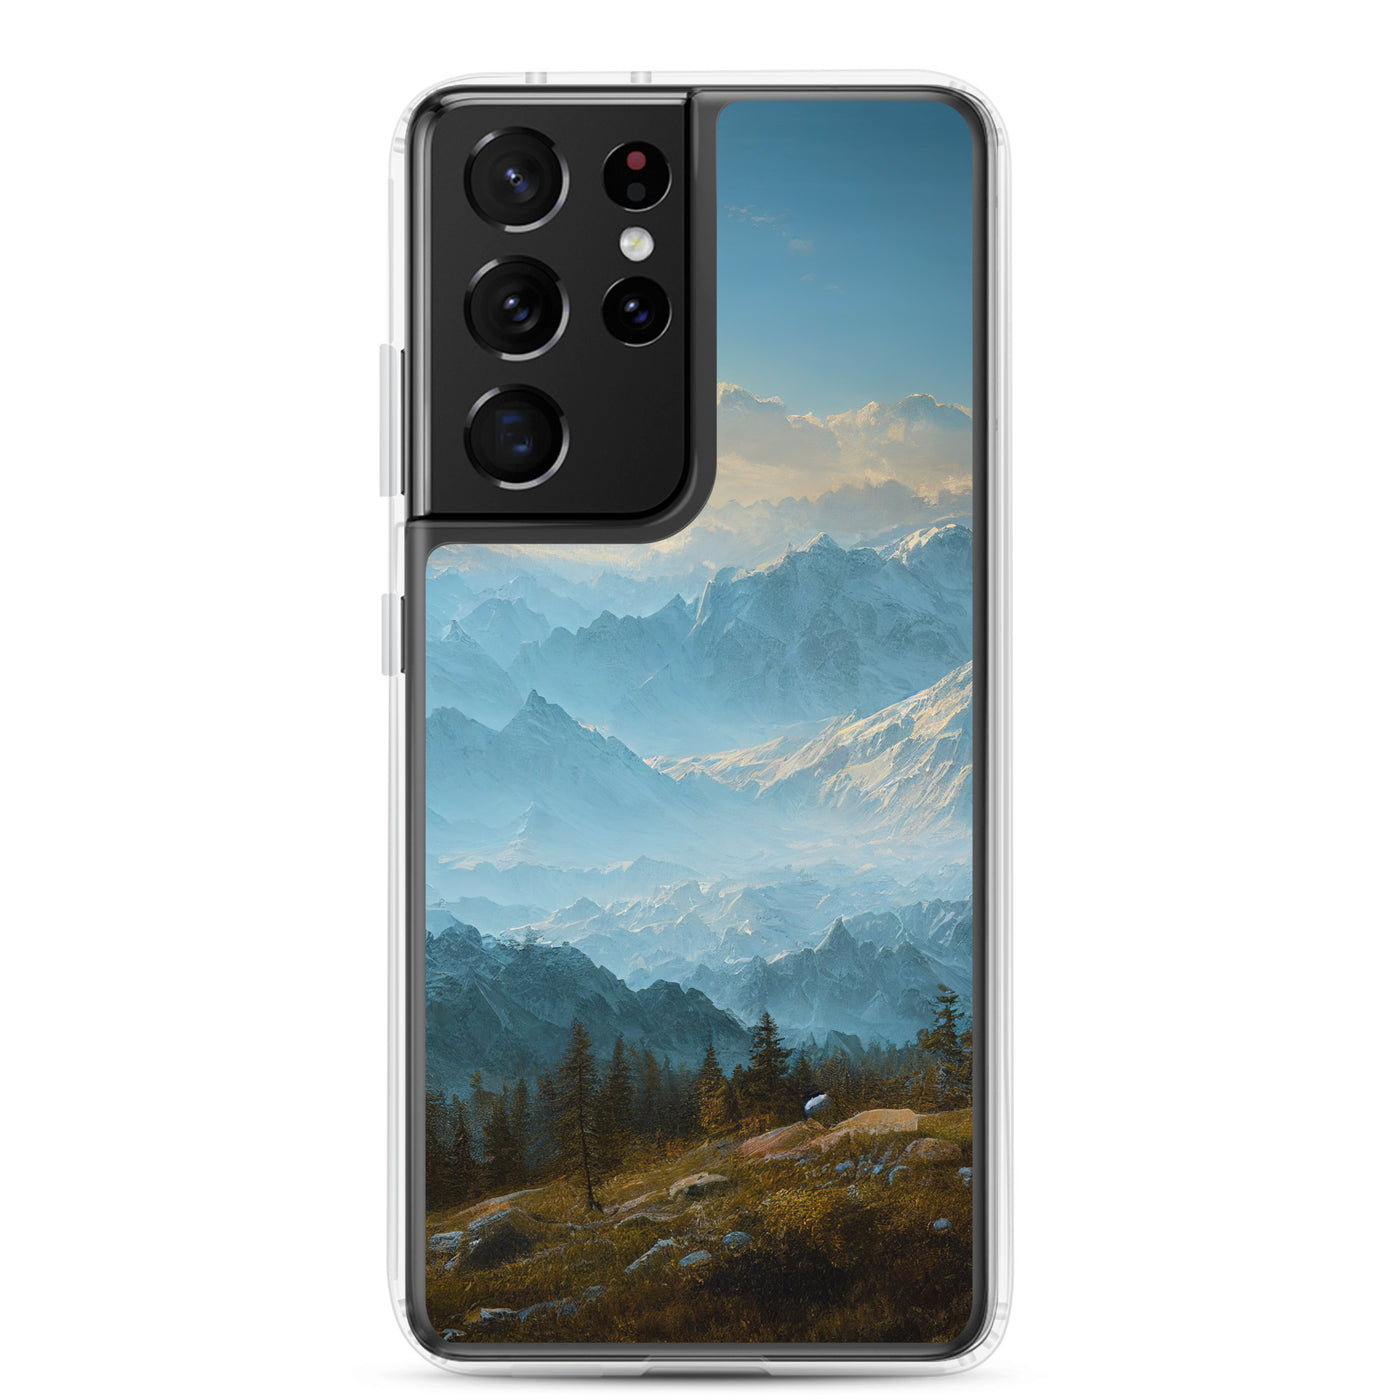 Schöne Berge mit Nebel bedeckt - Ölmalerei - Samsung Schutzhülle (durchsichtig) berge xxx Samsung Galaxy S21 Ultra